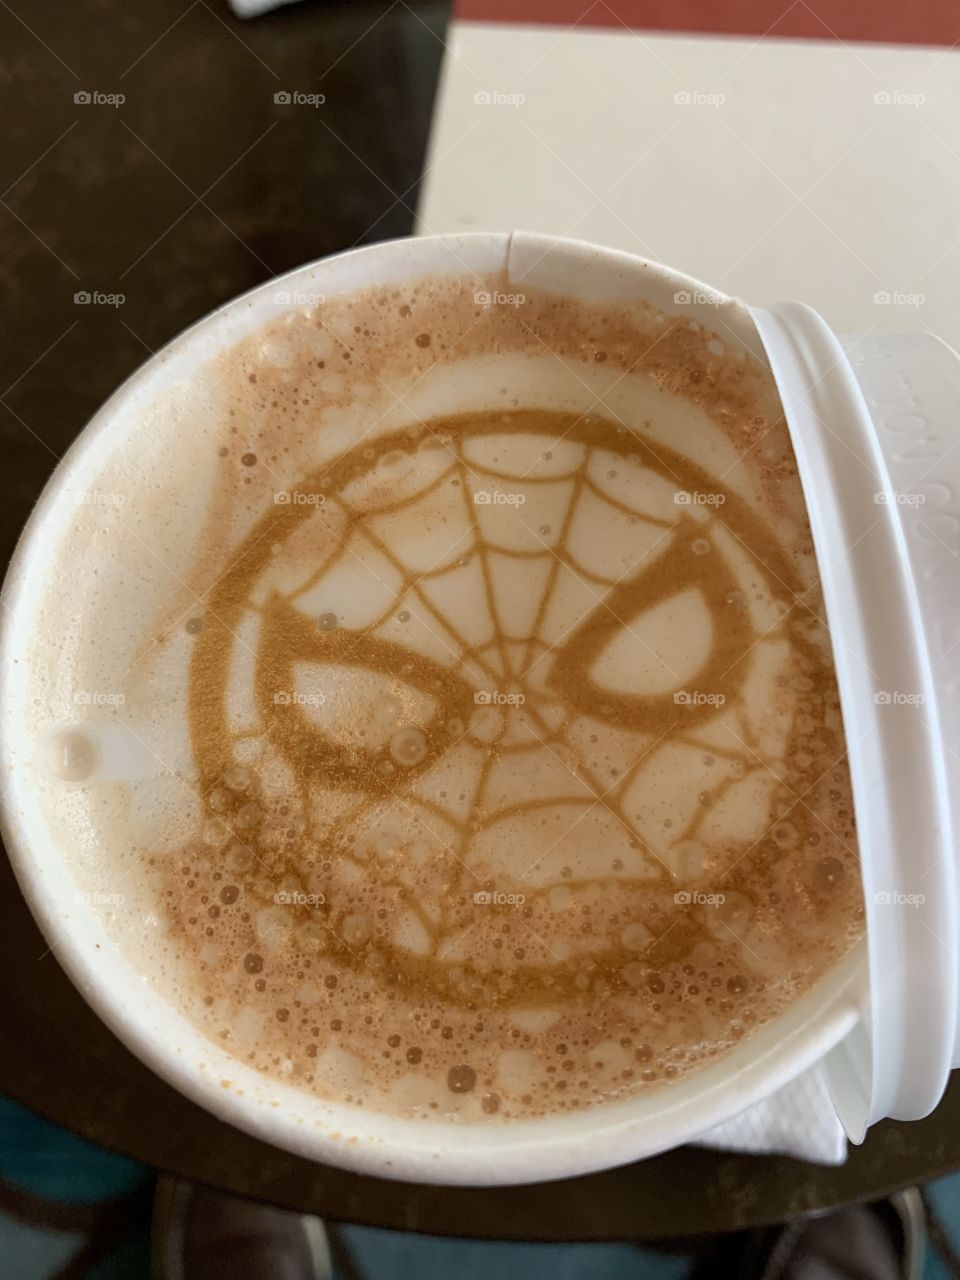 Spider-Man latte. 